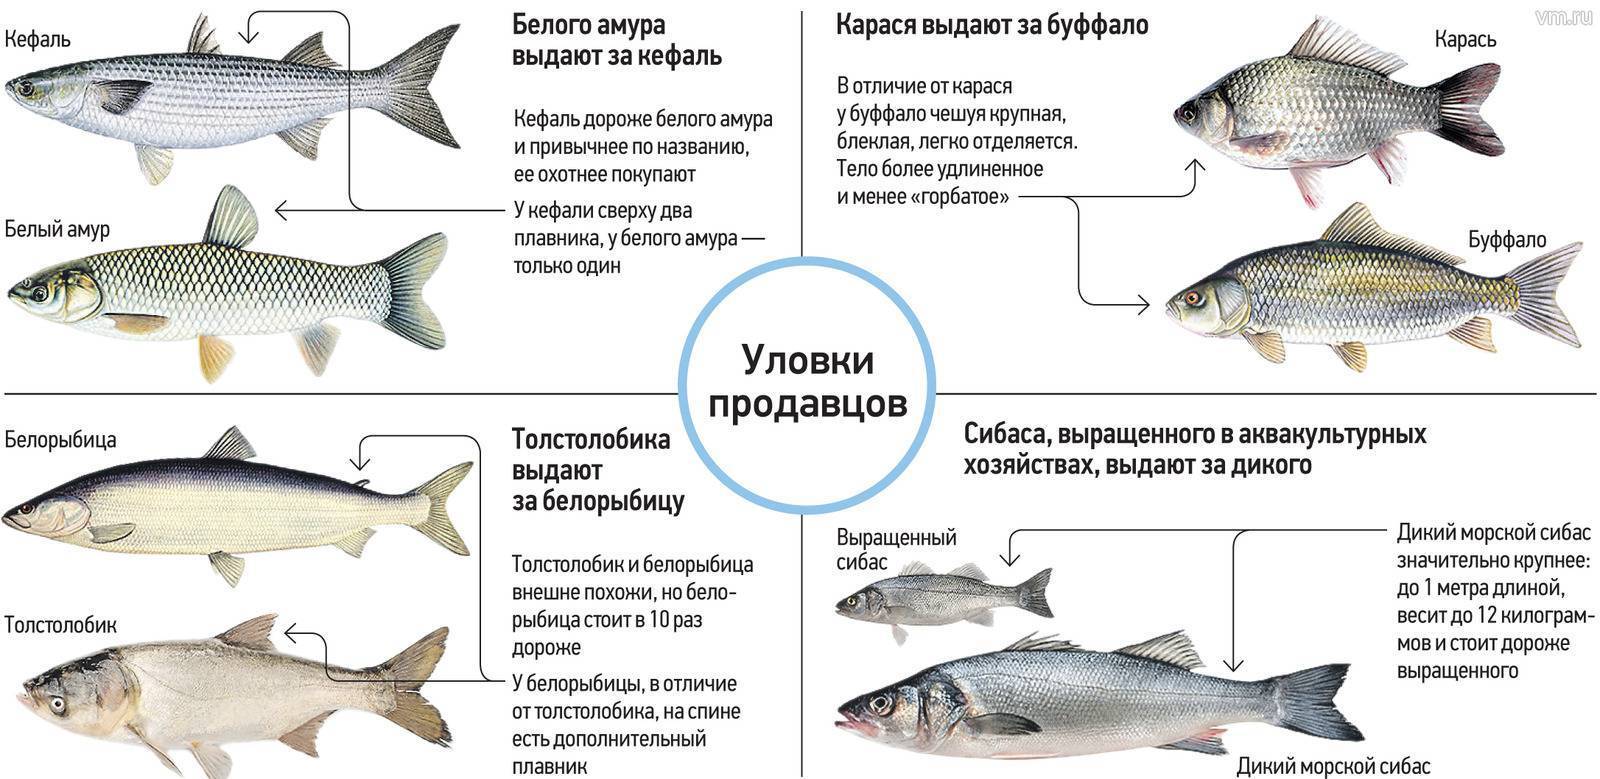 Рыба сиг: характеристика, места обитания, виды с фото, приготовление